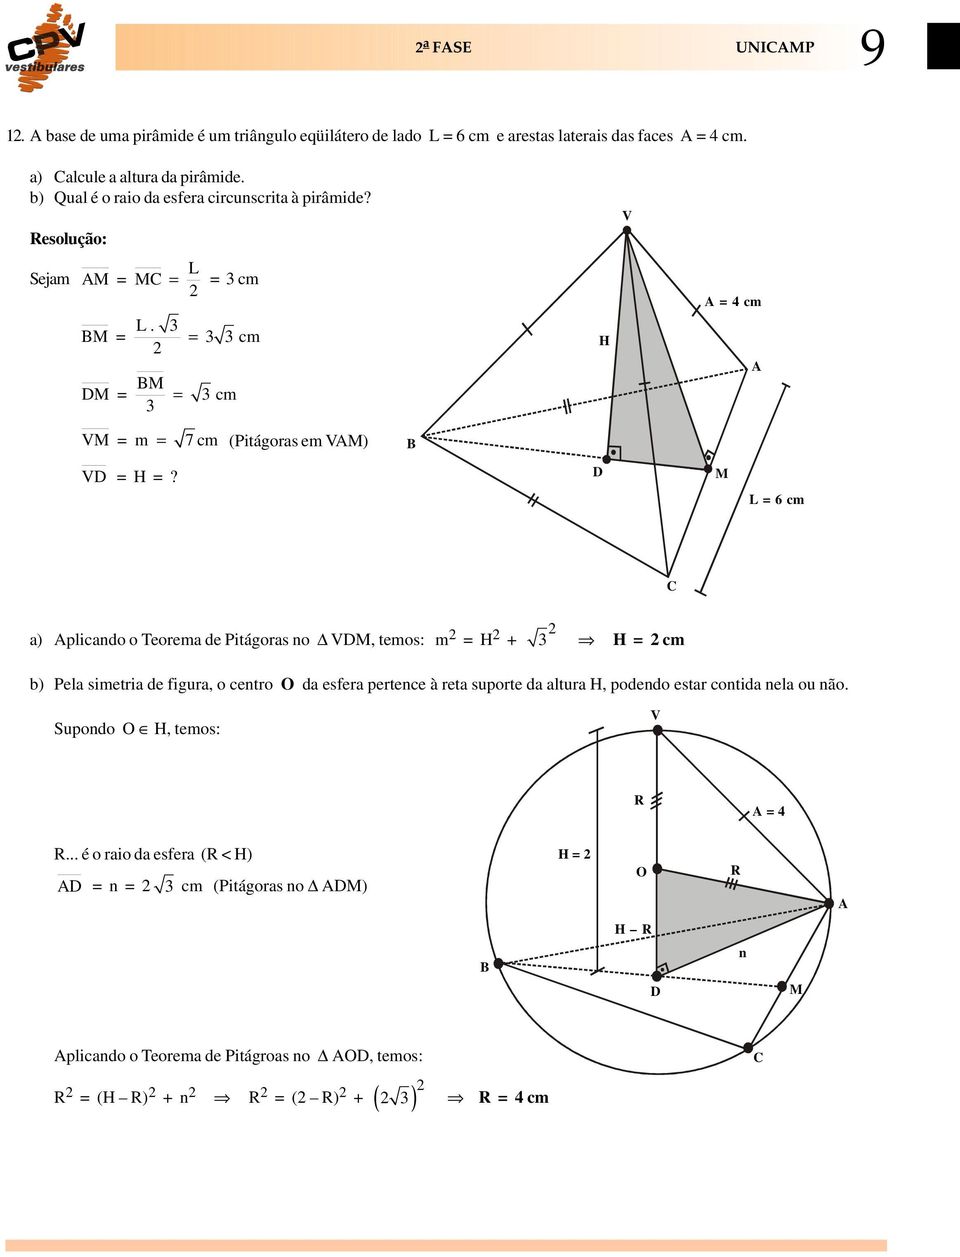 D M L = 6 cm C a) Aplicando o Teorema de Pitágoras no VDM, temos: m = H + 3 H = cm b) Pela simetria de figura, o centro O da esfera pertence à reta suporte da altura H, podendo estar